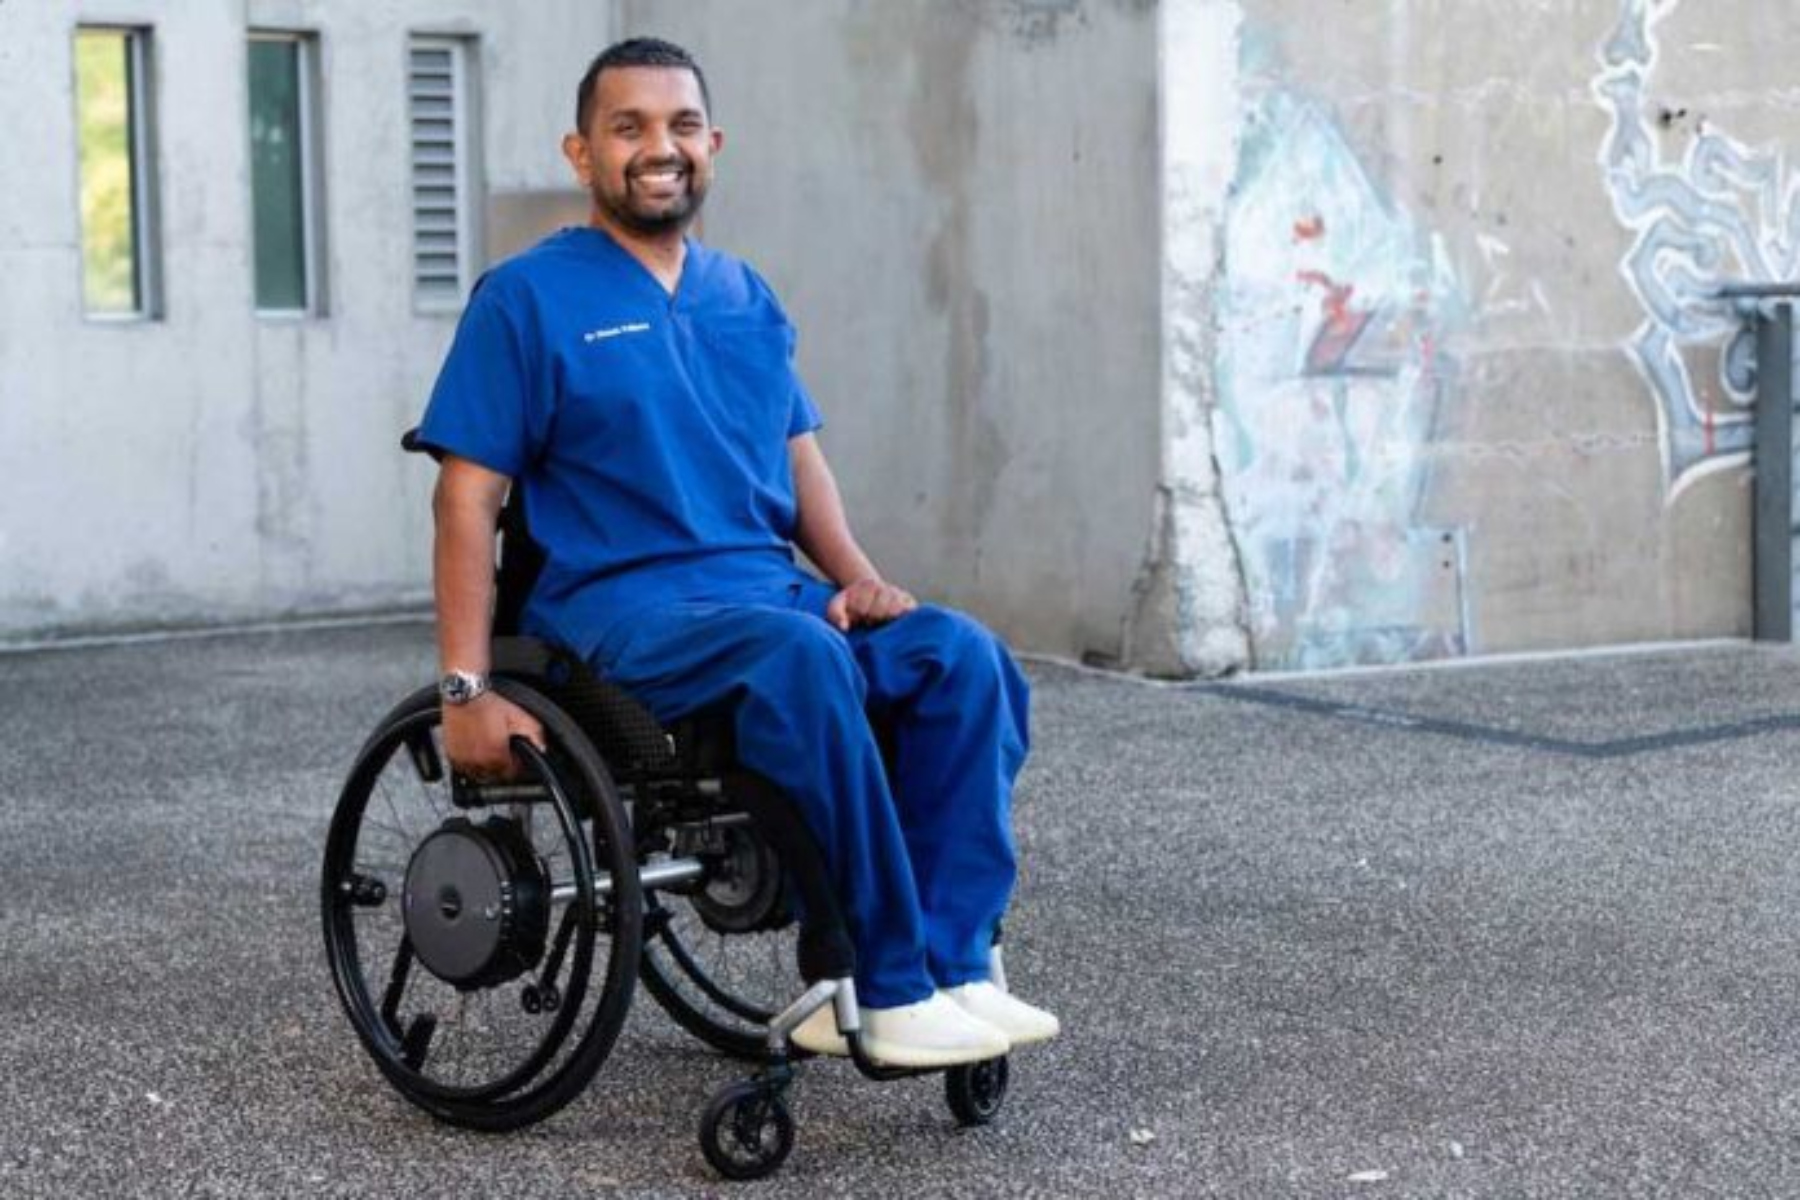 Αναπηρία: Οι γιατροί με αναπηρίες βιώνουν περισσότερη κακομεταχείριση